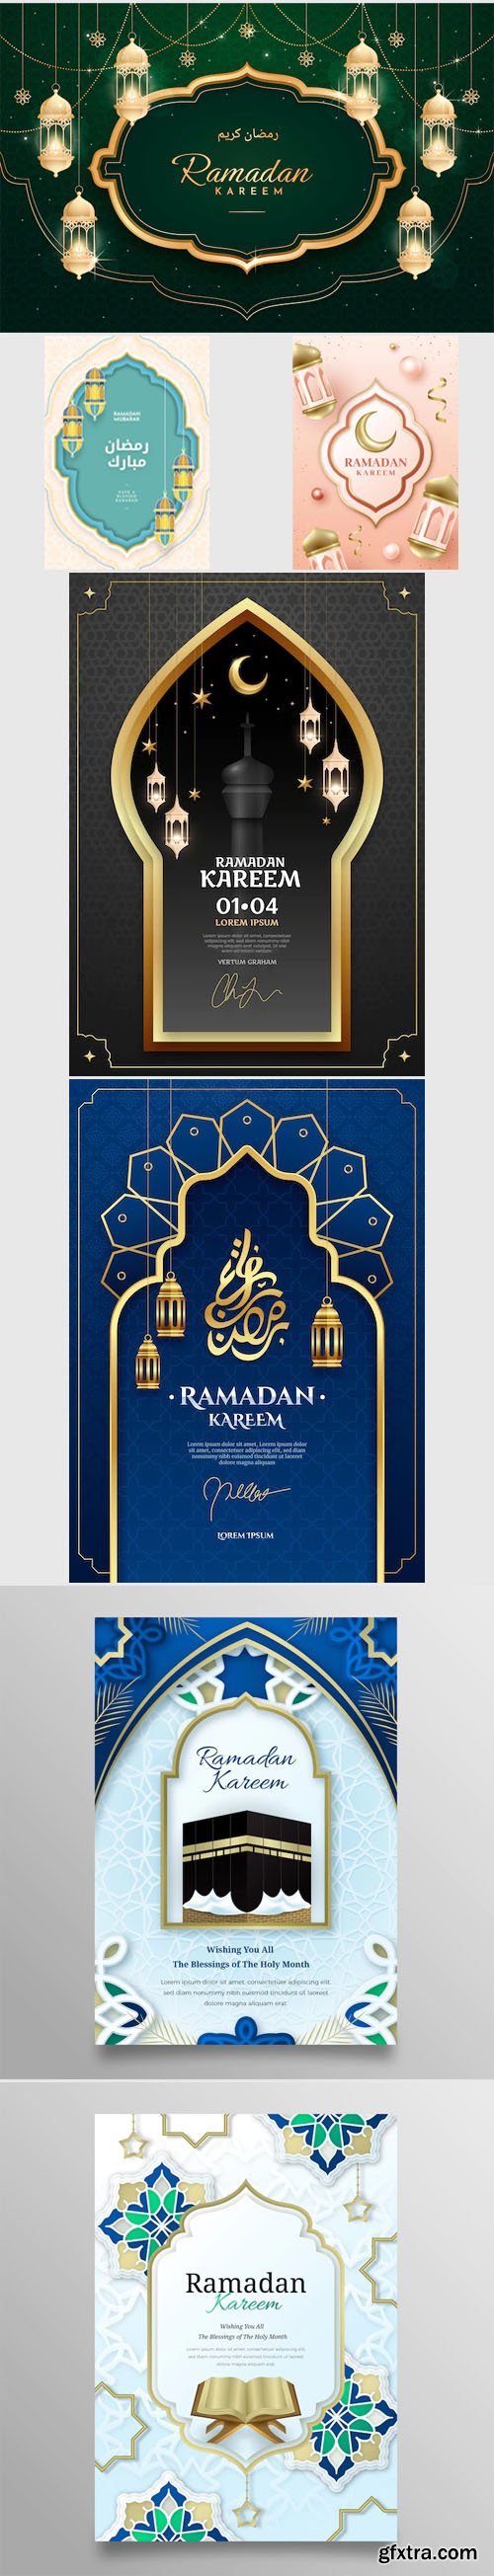 Ramadan Kareem - Beautiful 15 Vector Templates Collection